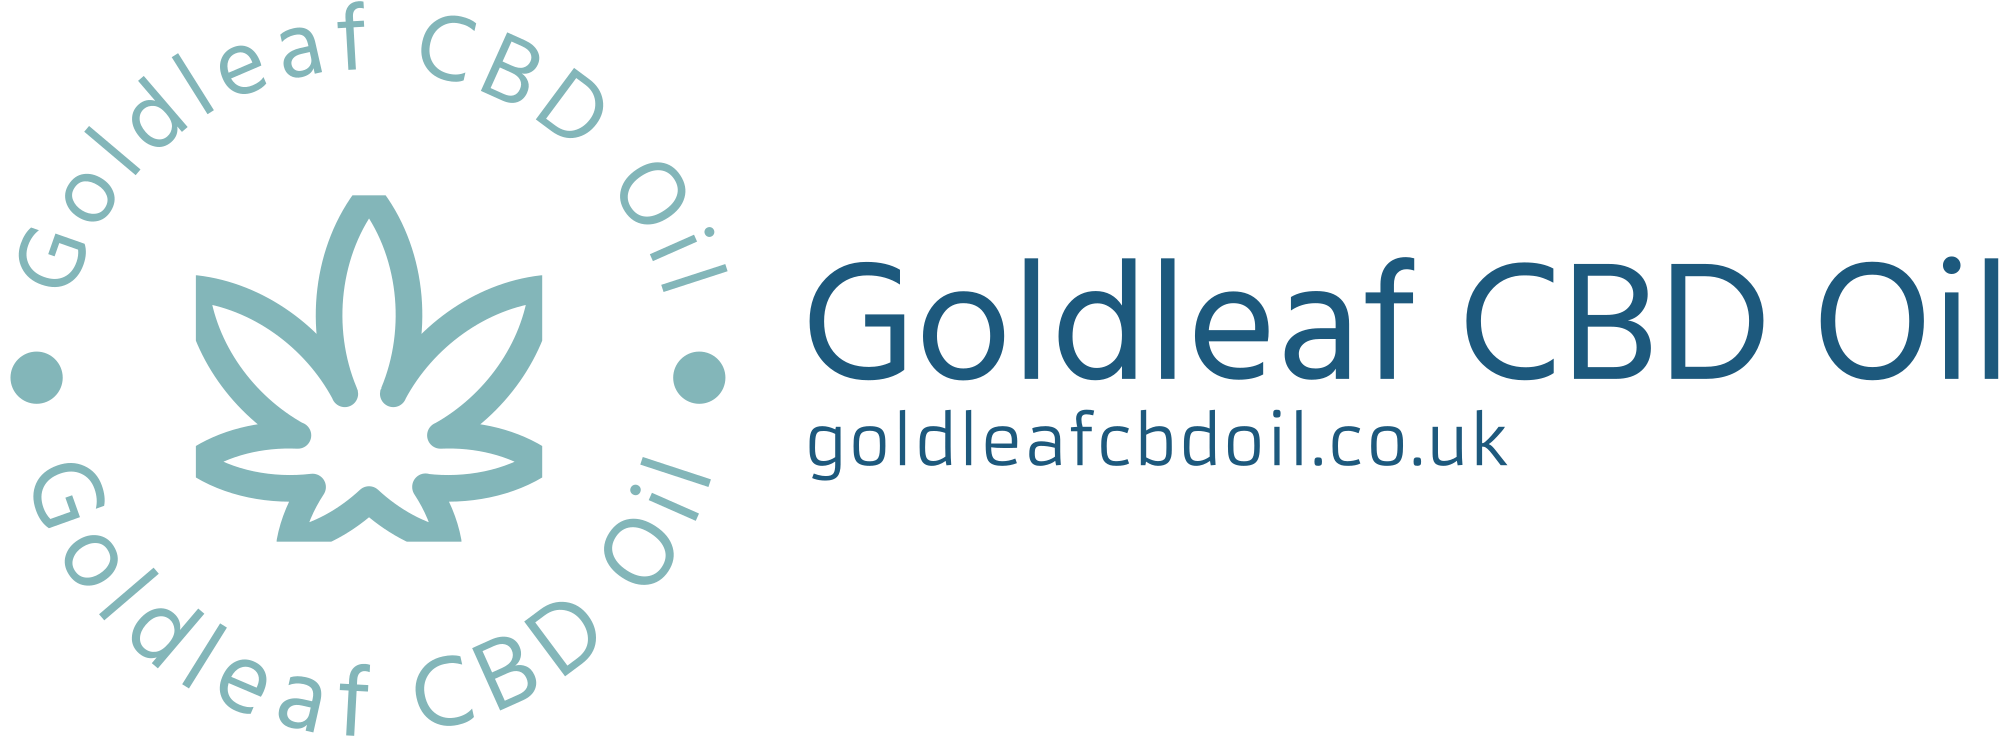 goldleafcbdoil.co.uk